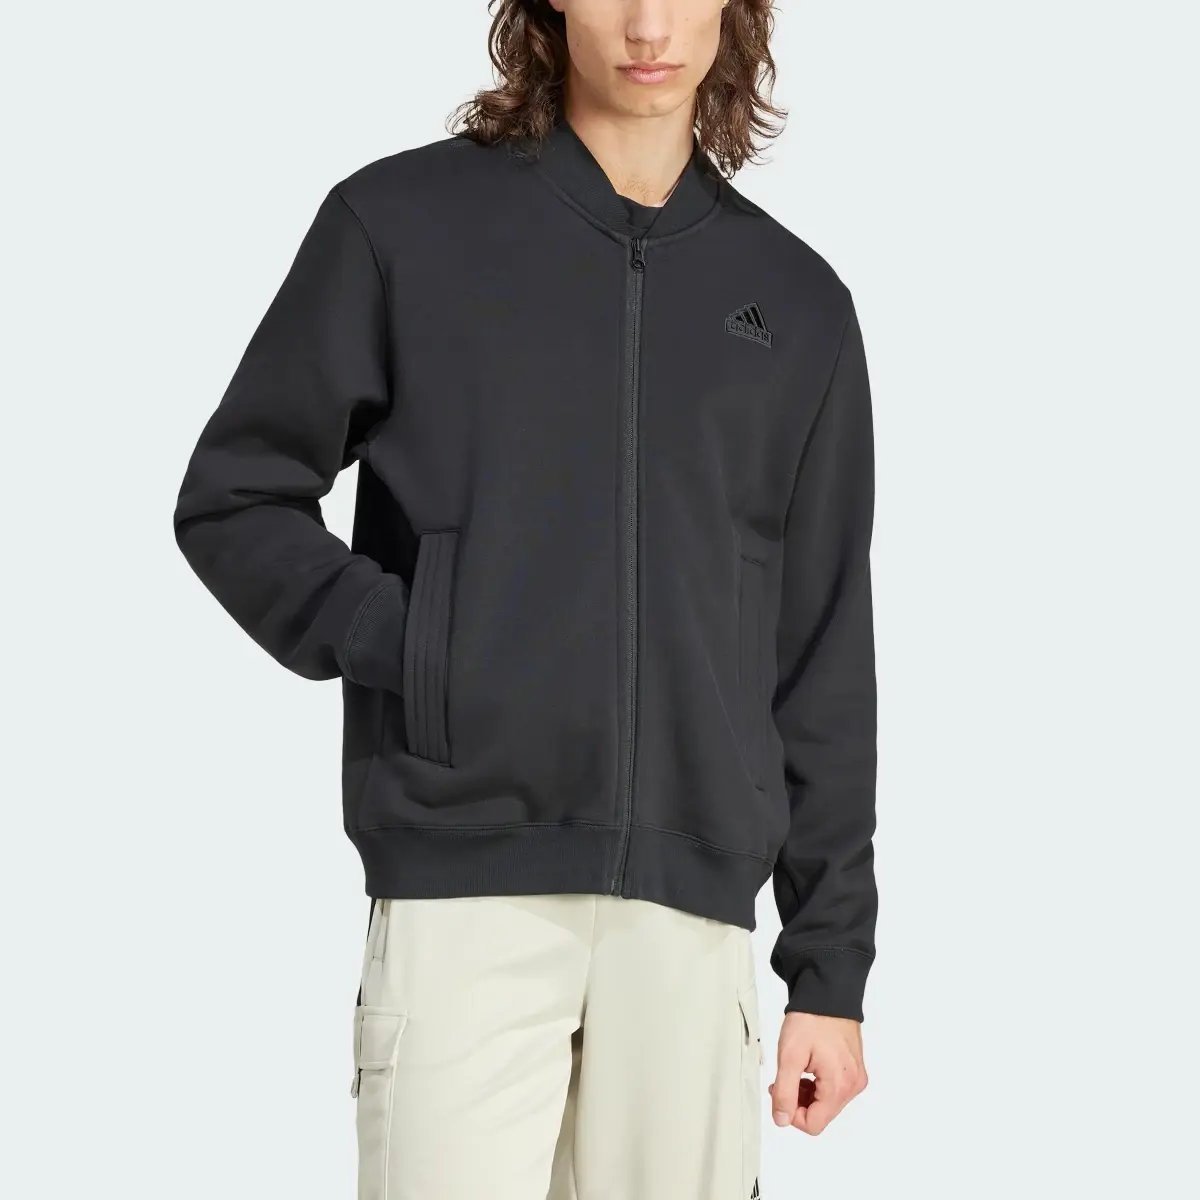 Adidas Lounge Fleece Bomber Jacket With Zip Opening. 1